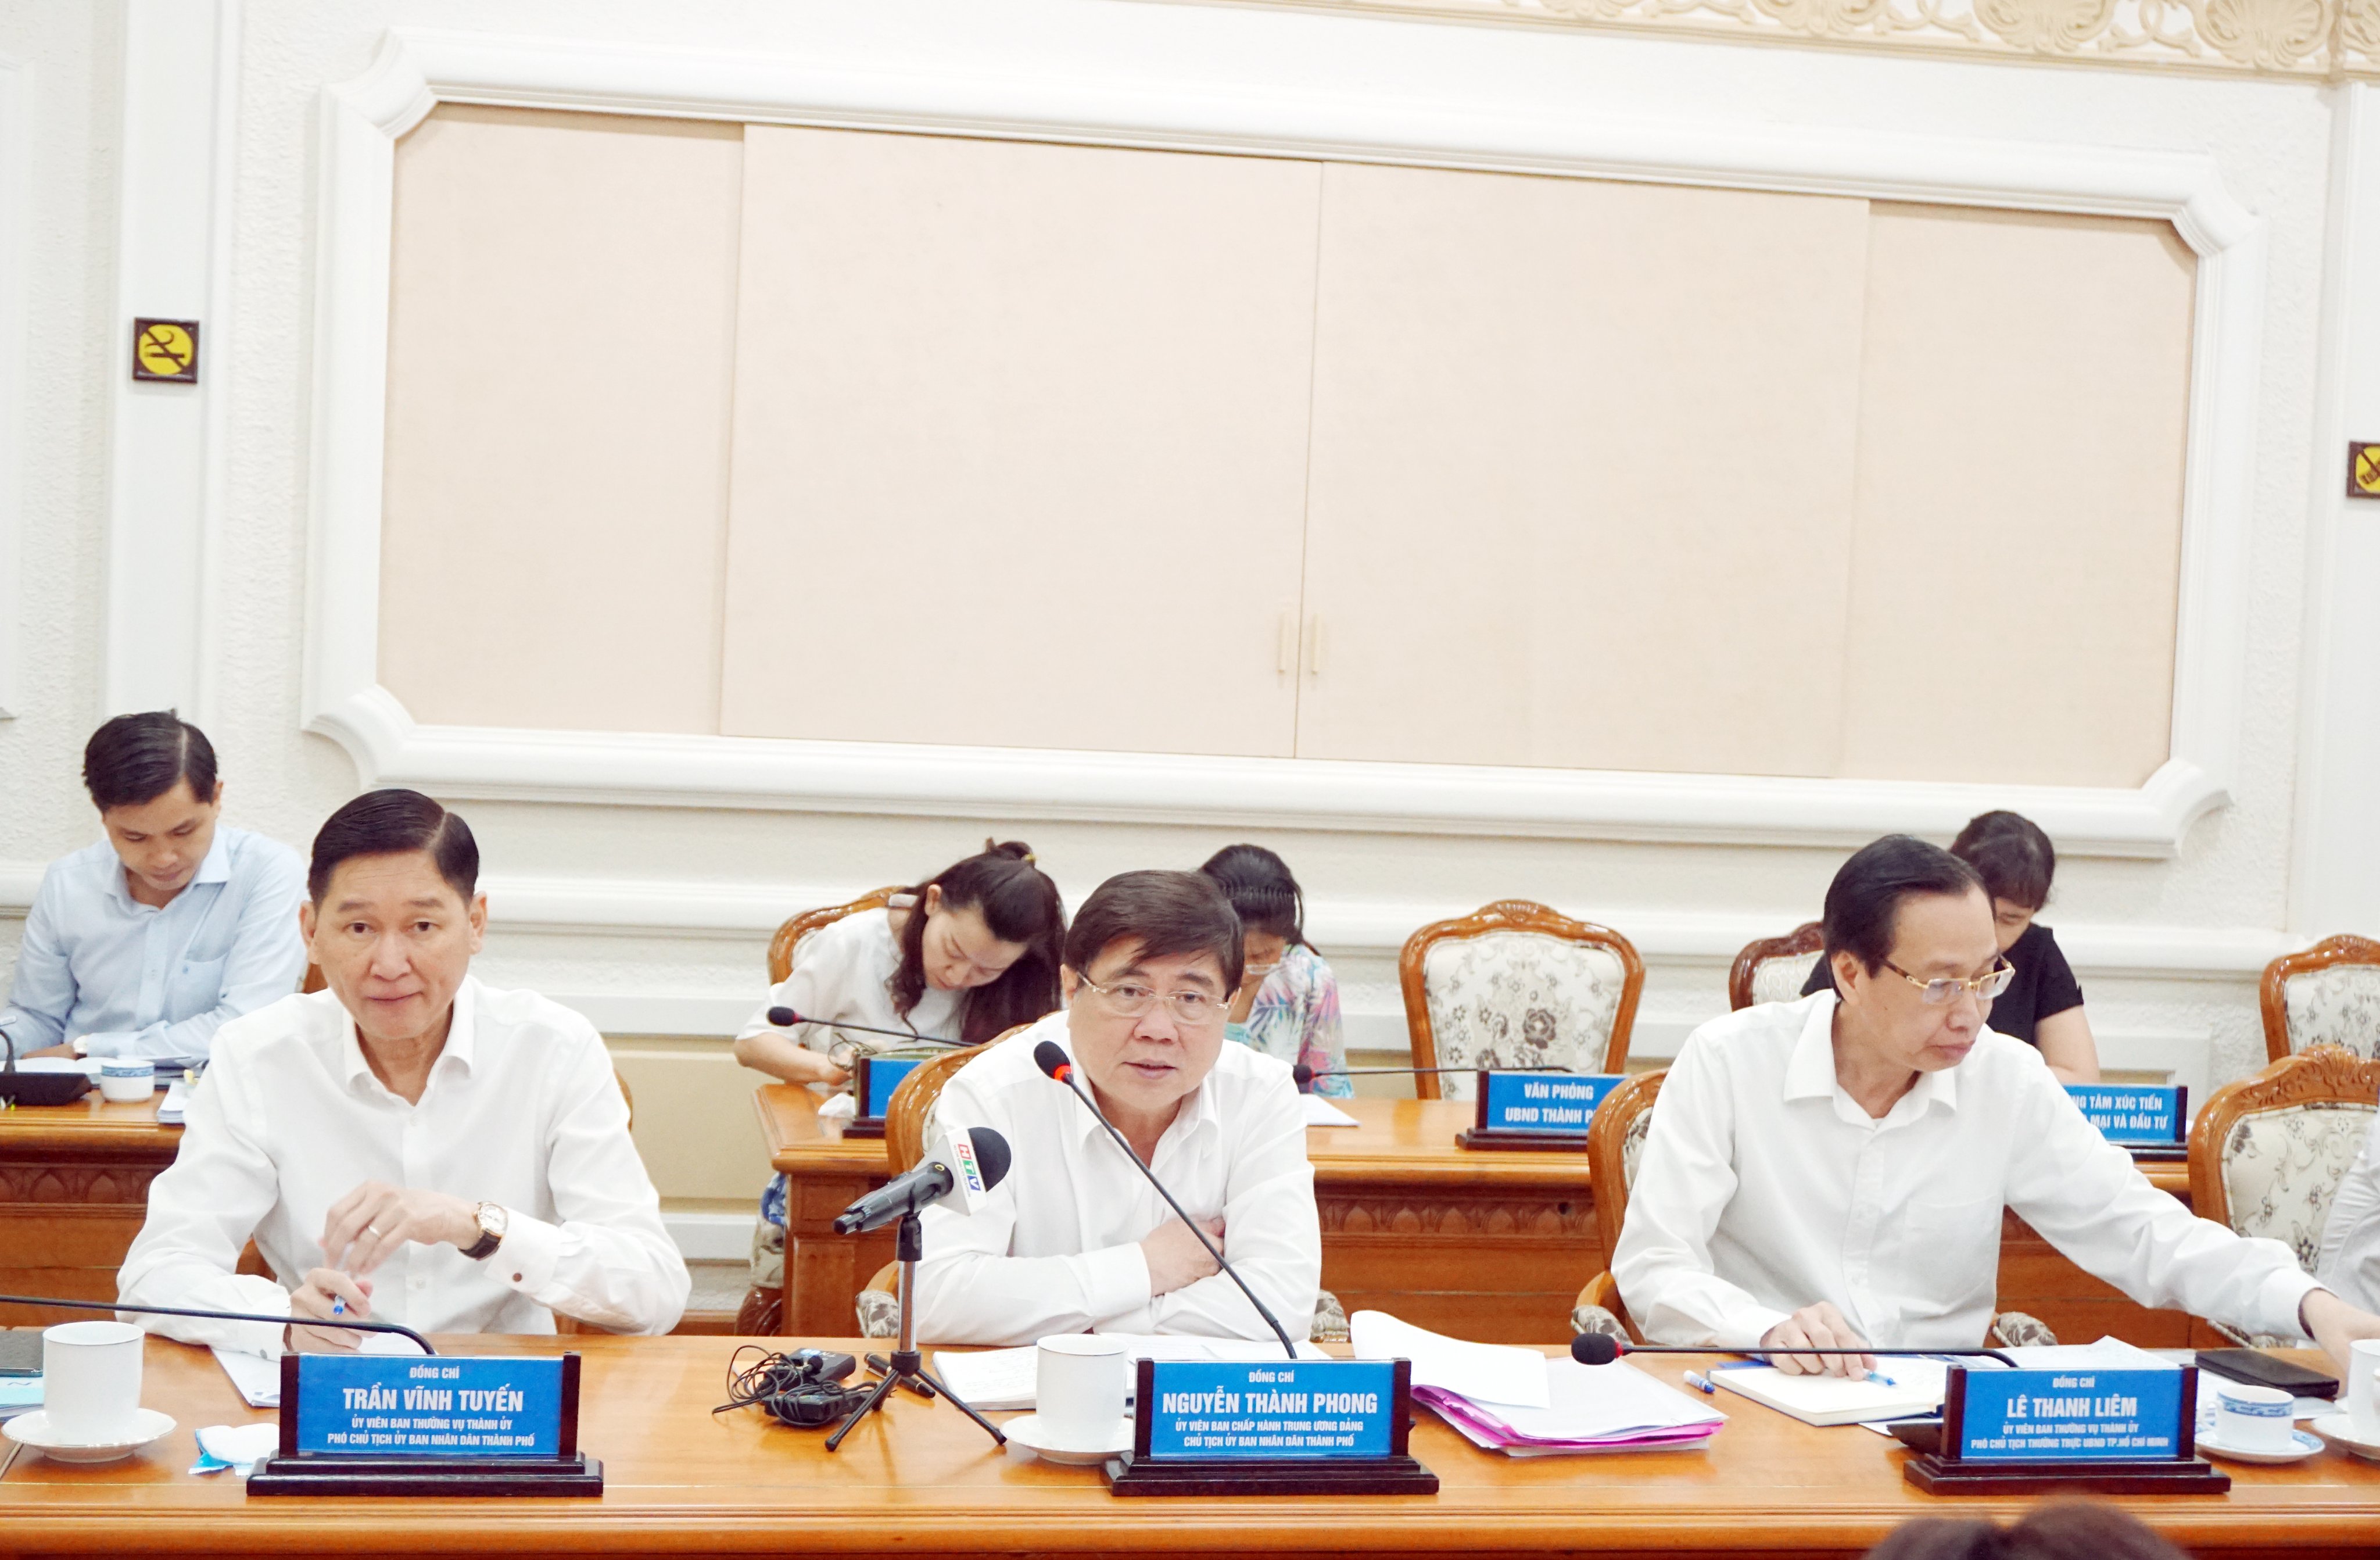 Theo Chủ tịch UBND TPHCM Nguyễn Thành Phong, UBND TPHCM sẽ kiến nghị Chính phủ giảm thuế cho các doanh nghiệp